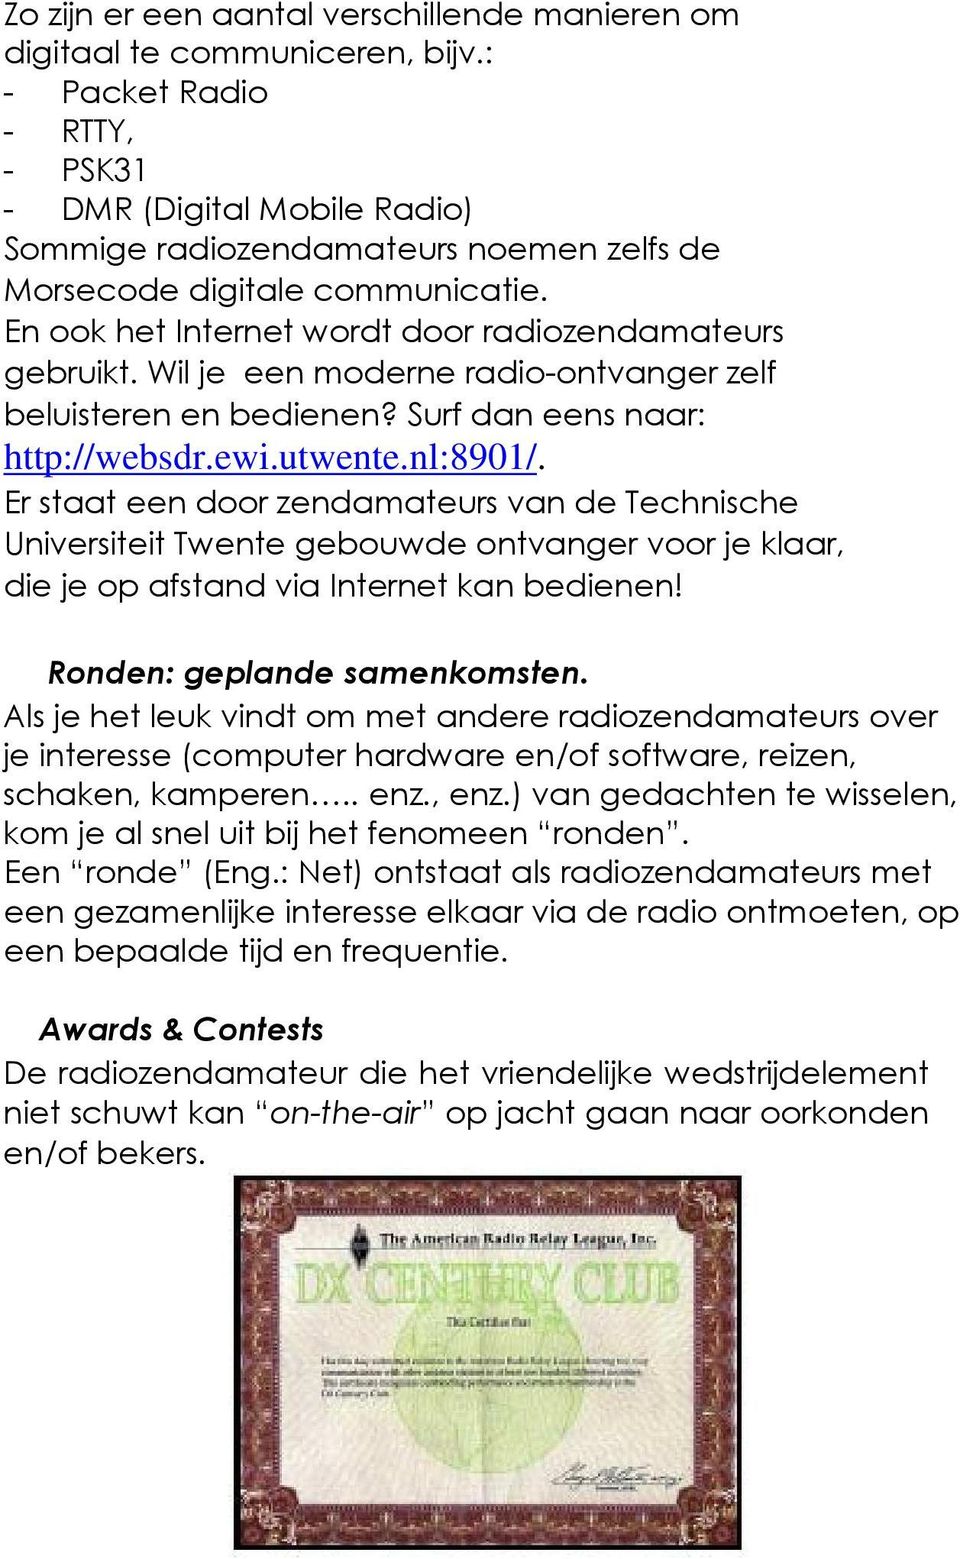 Wil je een moderne radio-ontvanger zelf beluisteren en bedienen? Surf dan eens naar: http://websdr.ewi.utwente.nl:8901/.